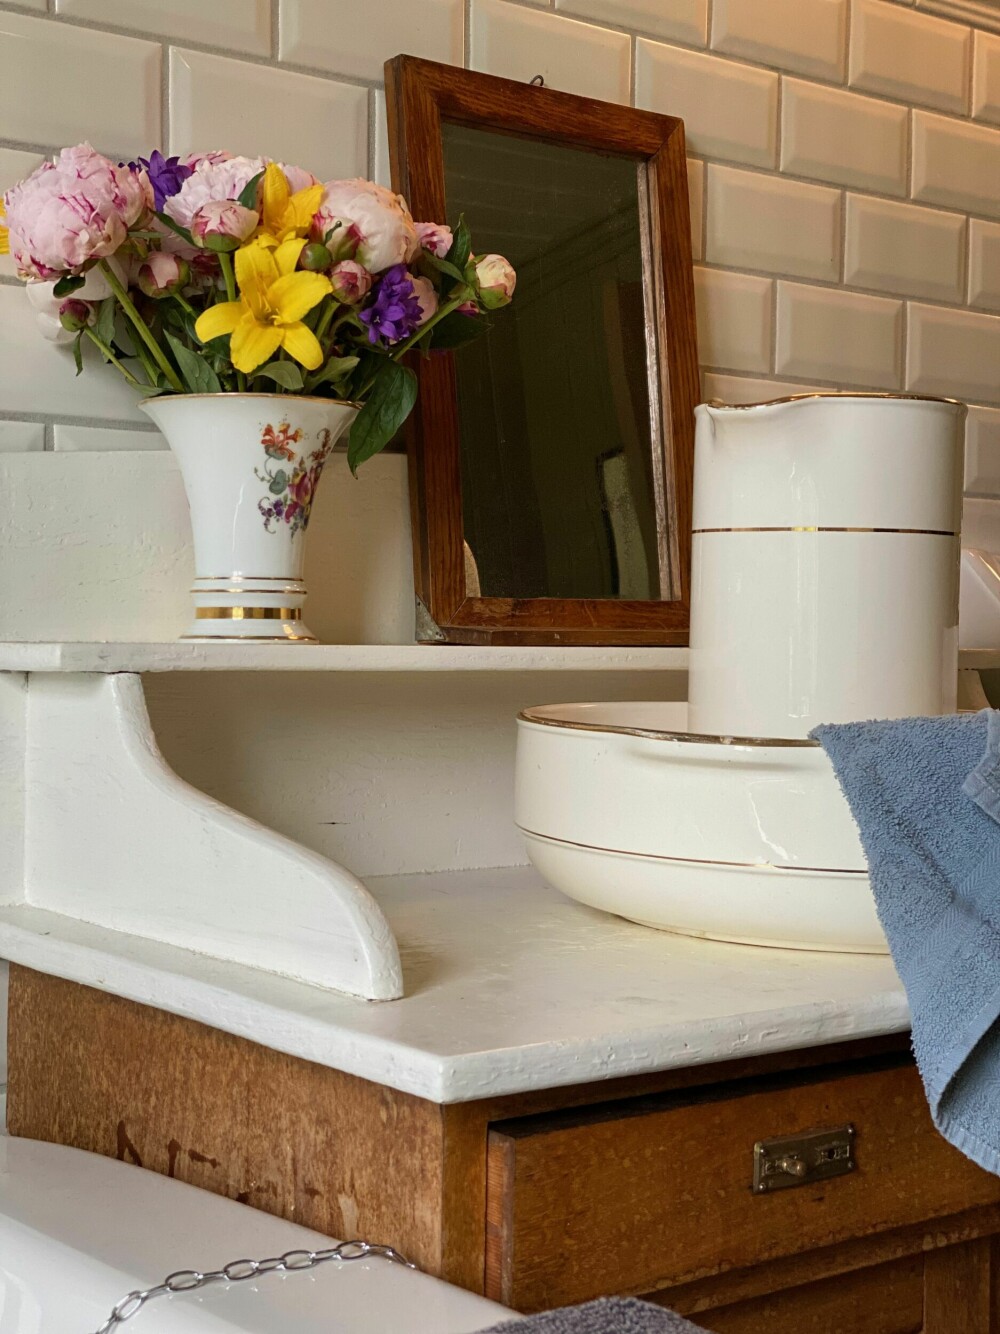 GAMMELDAGS: En av de viktigste moderne elementer man ønsker seg i et hjem er rennende vann. Og det er en selvfølge for de fleste av oss – heldigvis. Men det gir en herlig gammeldags stemning på badet hvis du i tillegg setter fram et gammelt vaskevannsfat.